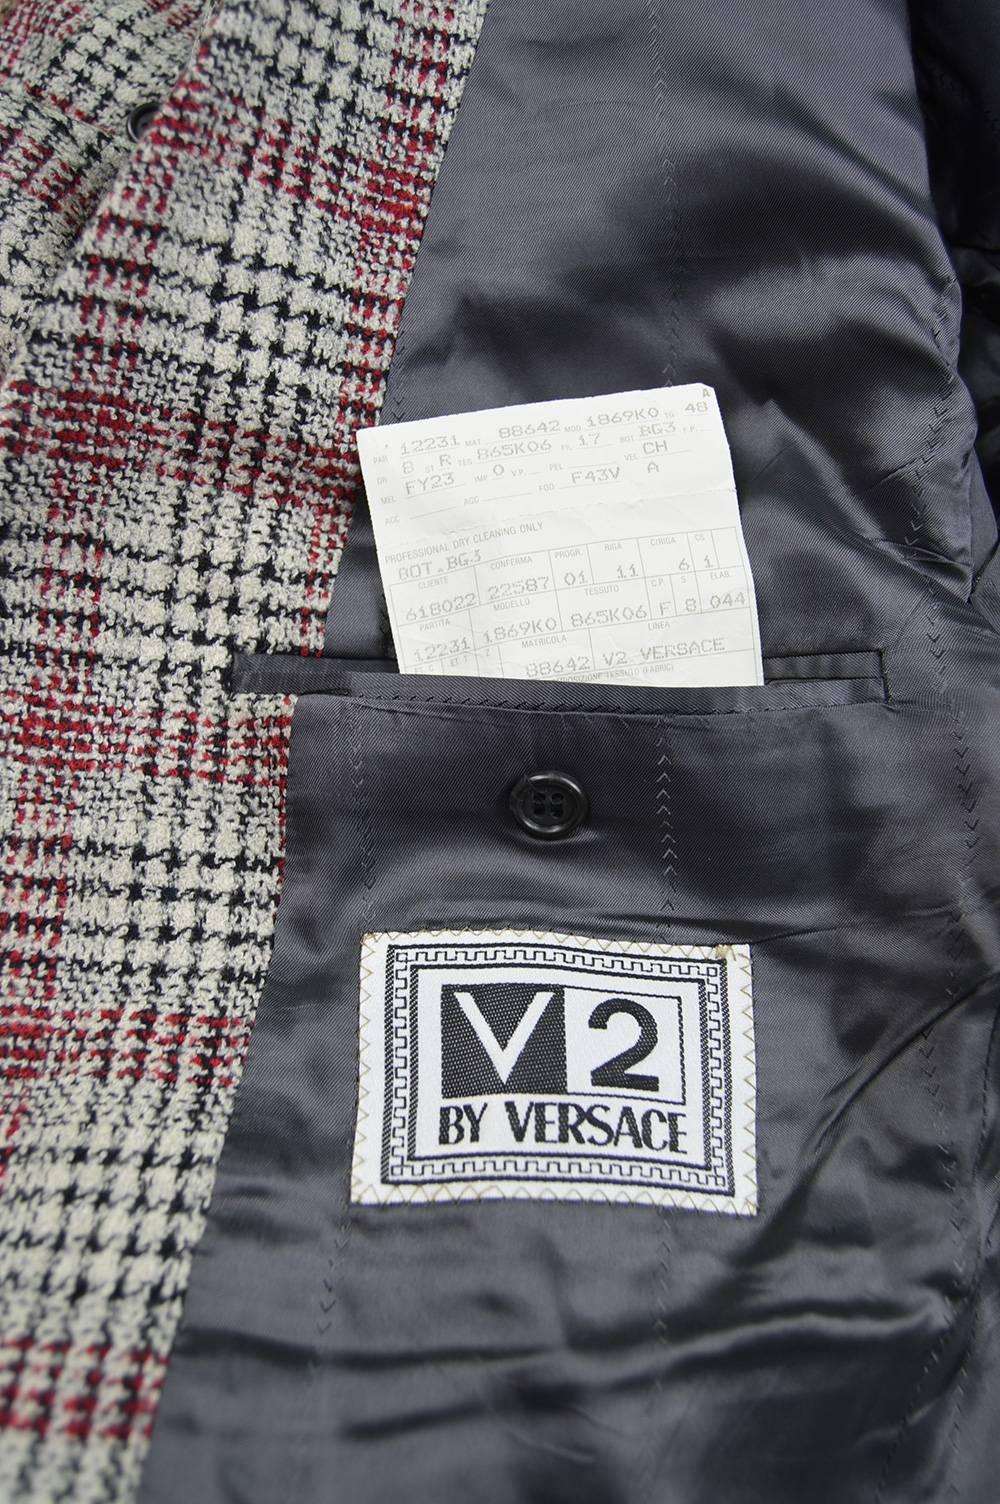 Versace Classic V2 Vintage Mens Black, White & Red Wool Plaid Blazer, 1990s 1